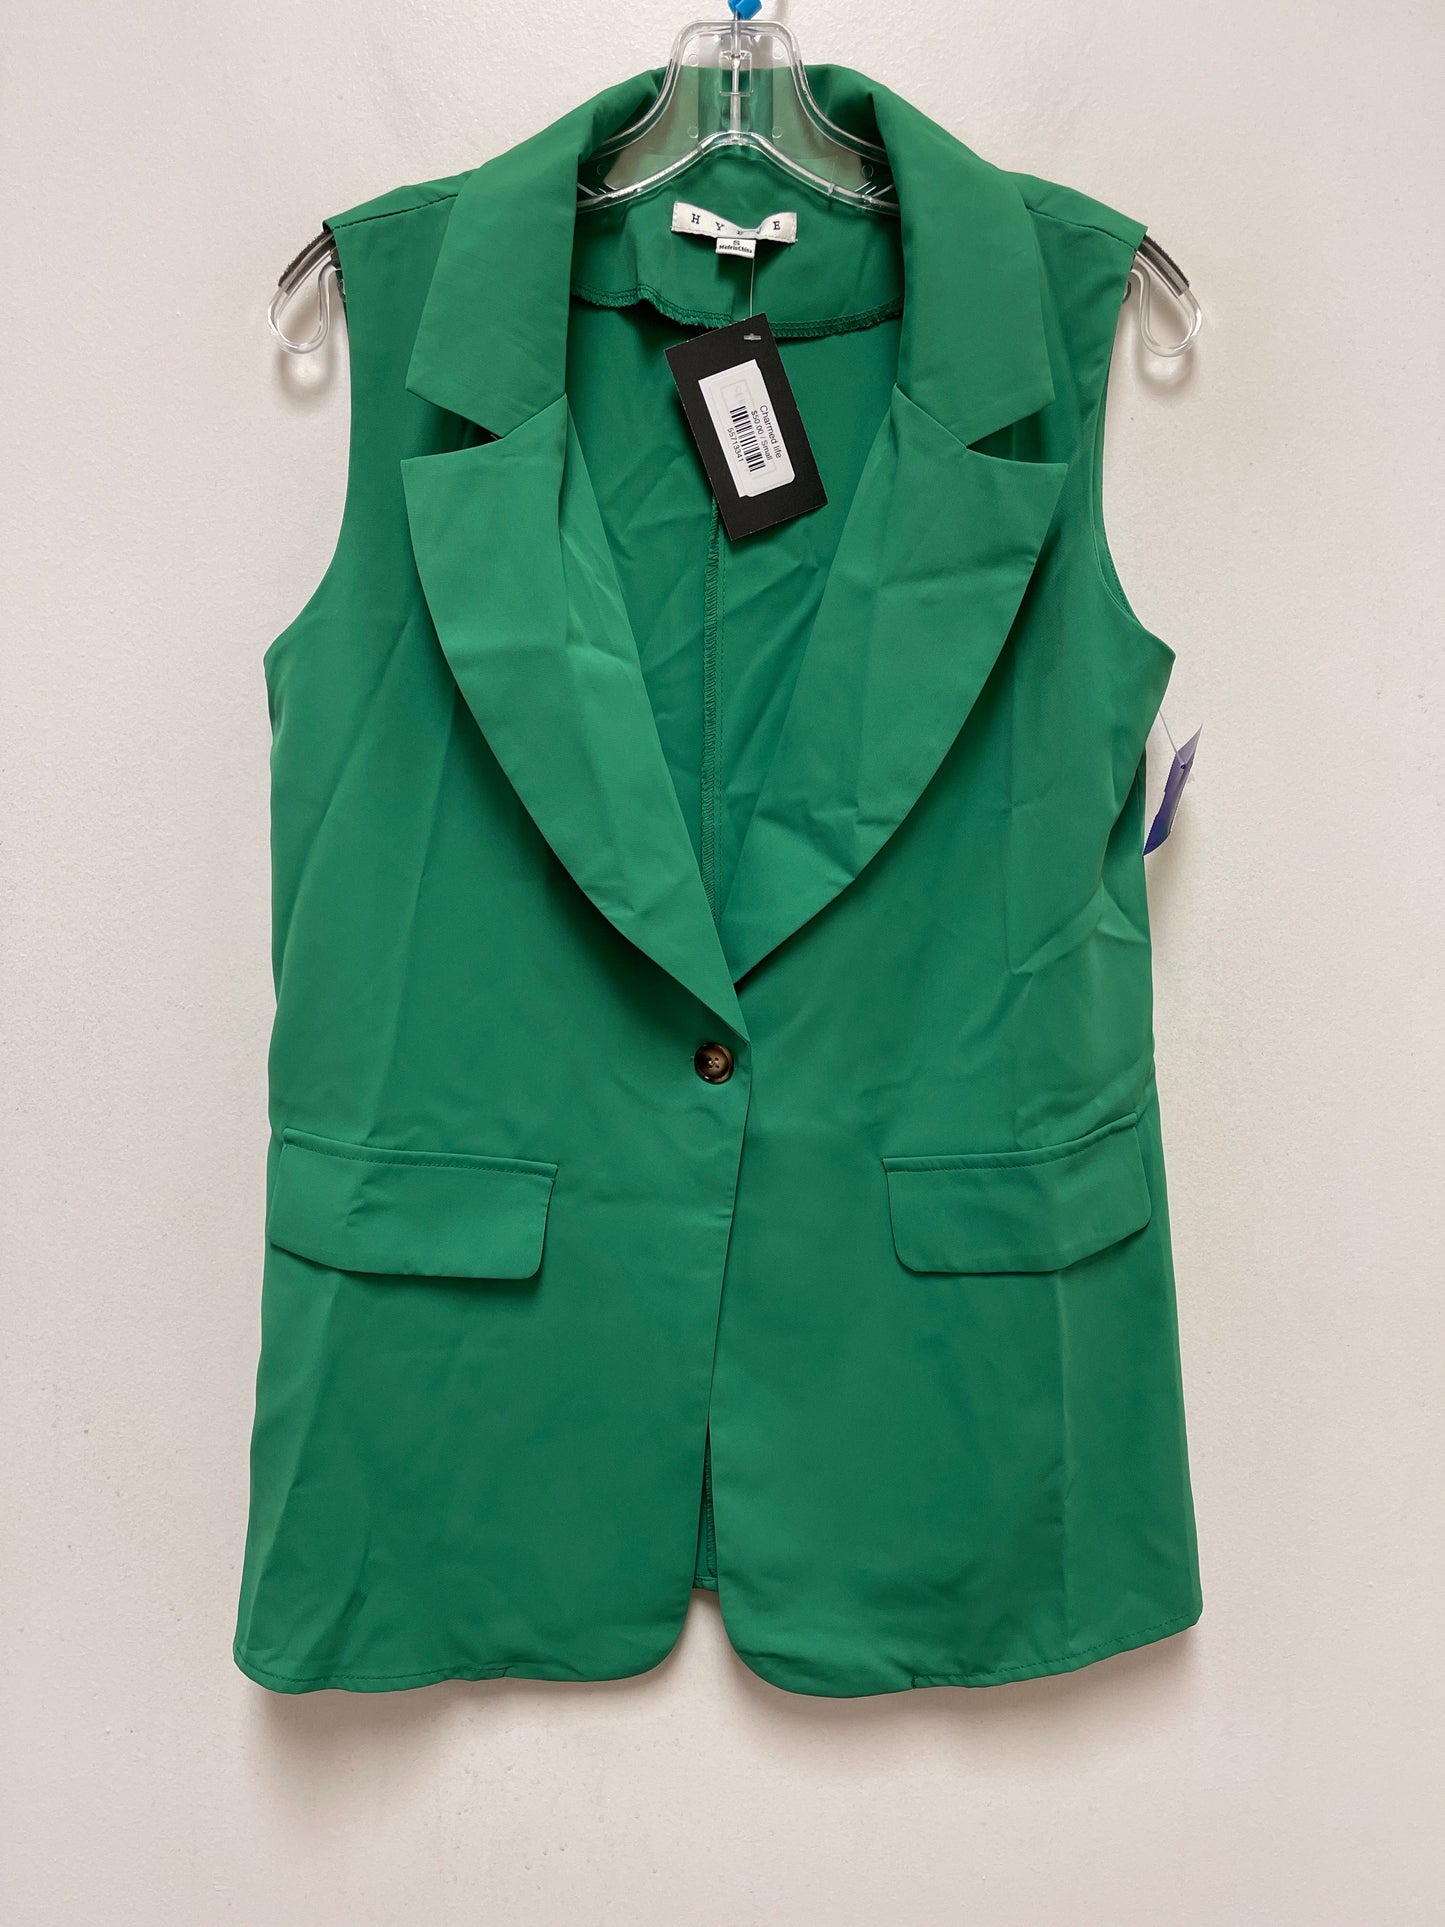 Green Vest Other Hyfve, Size S